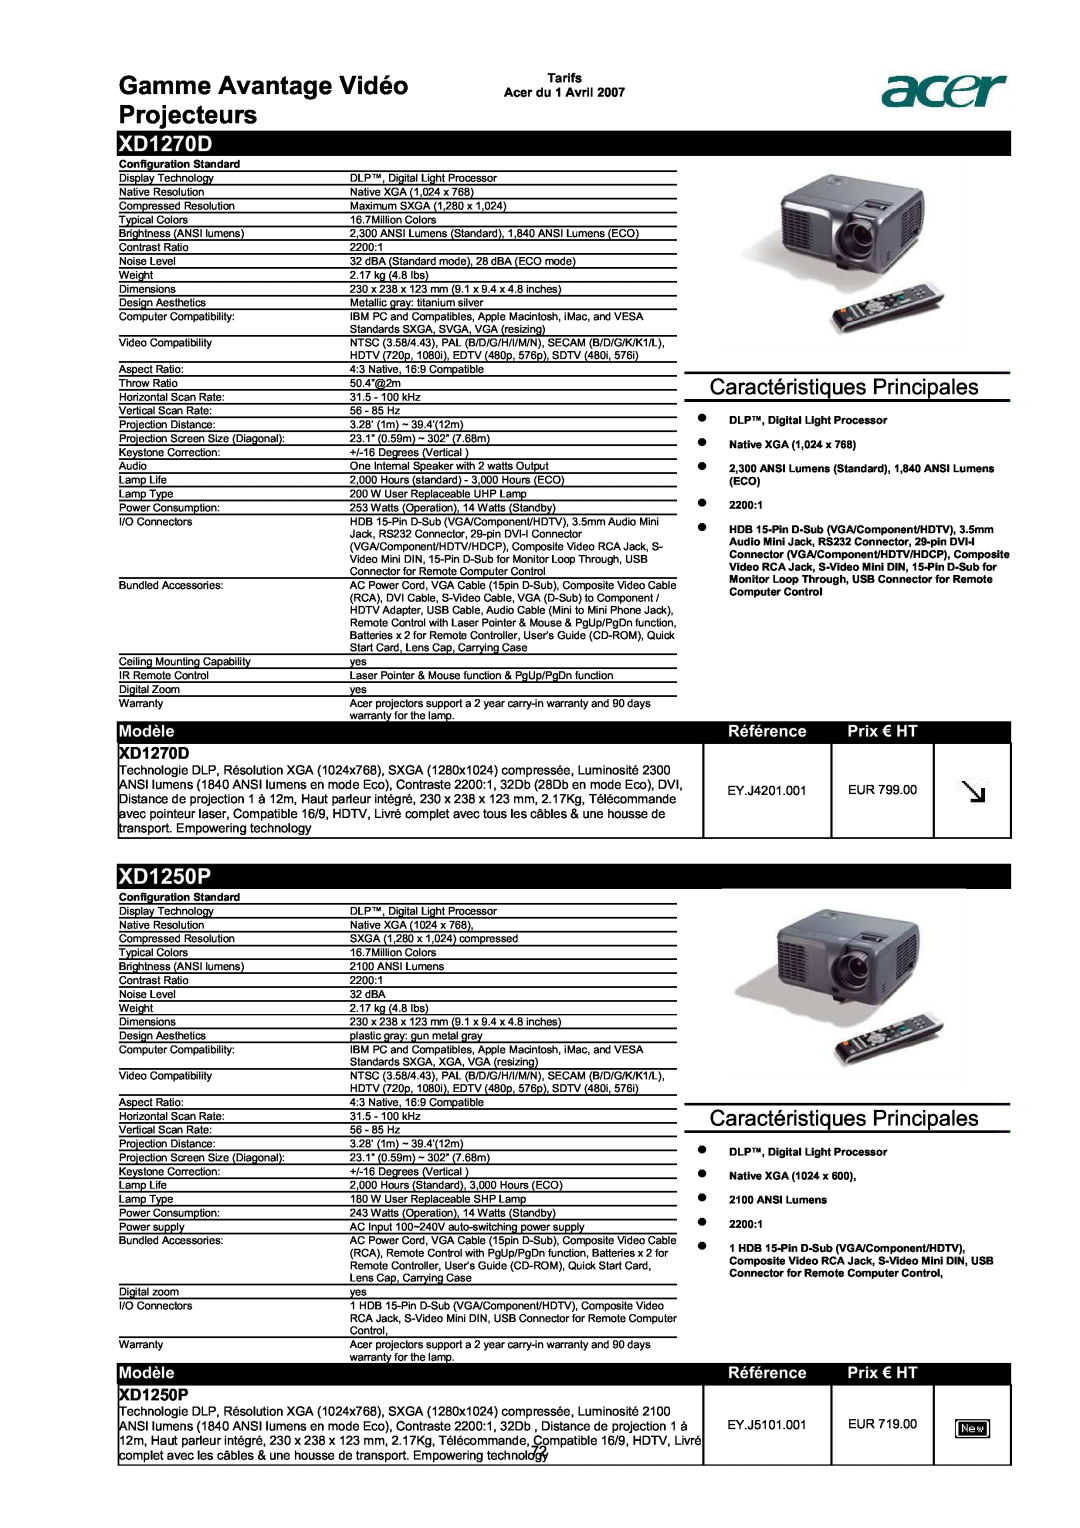 Acer AC713B-17 Gamme Avantage Vidéo Projecteurs, XD1270D, XD1250P, Caractéristiques Principales, Modèle, Référence 